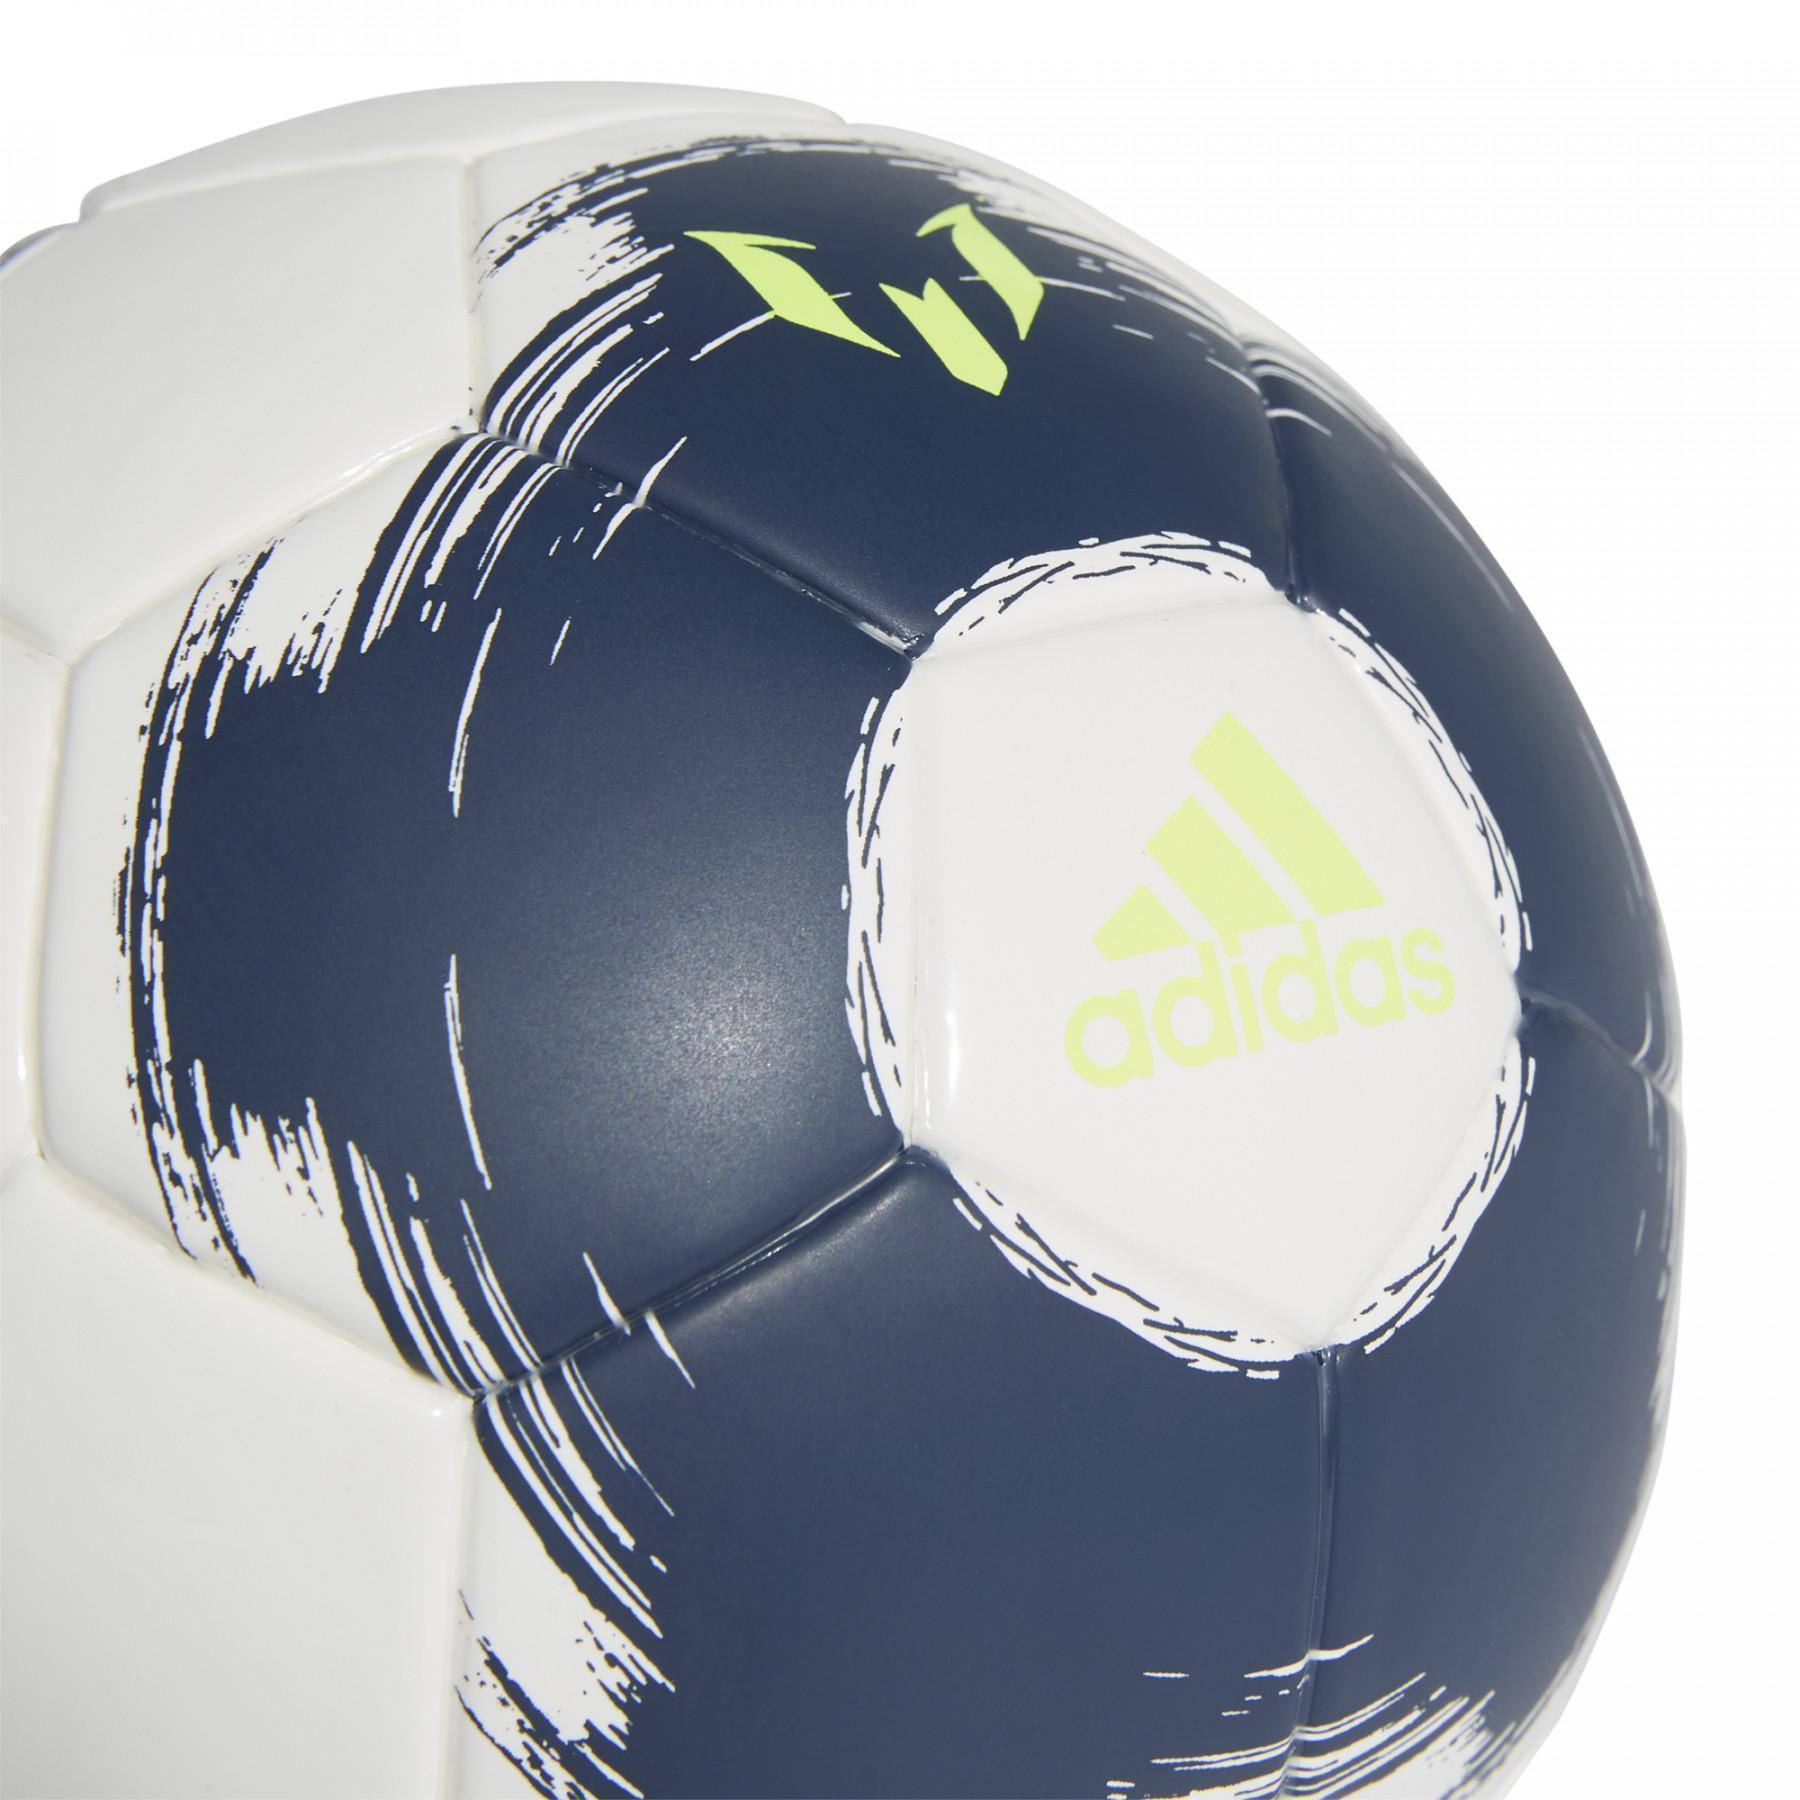 Balloon adidas Mini Messi